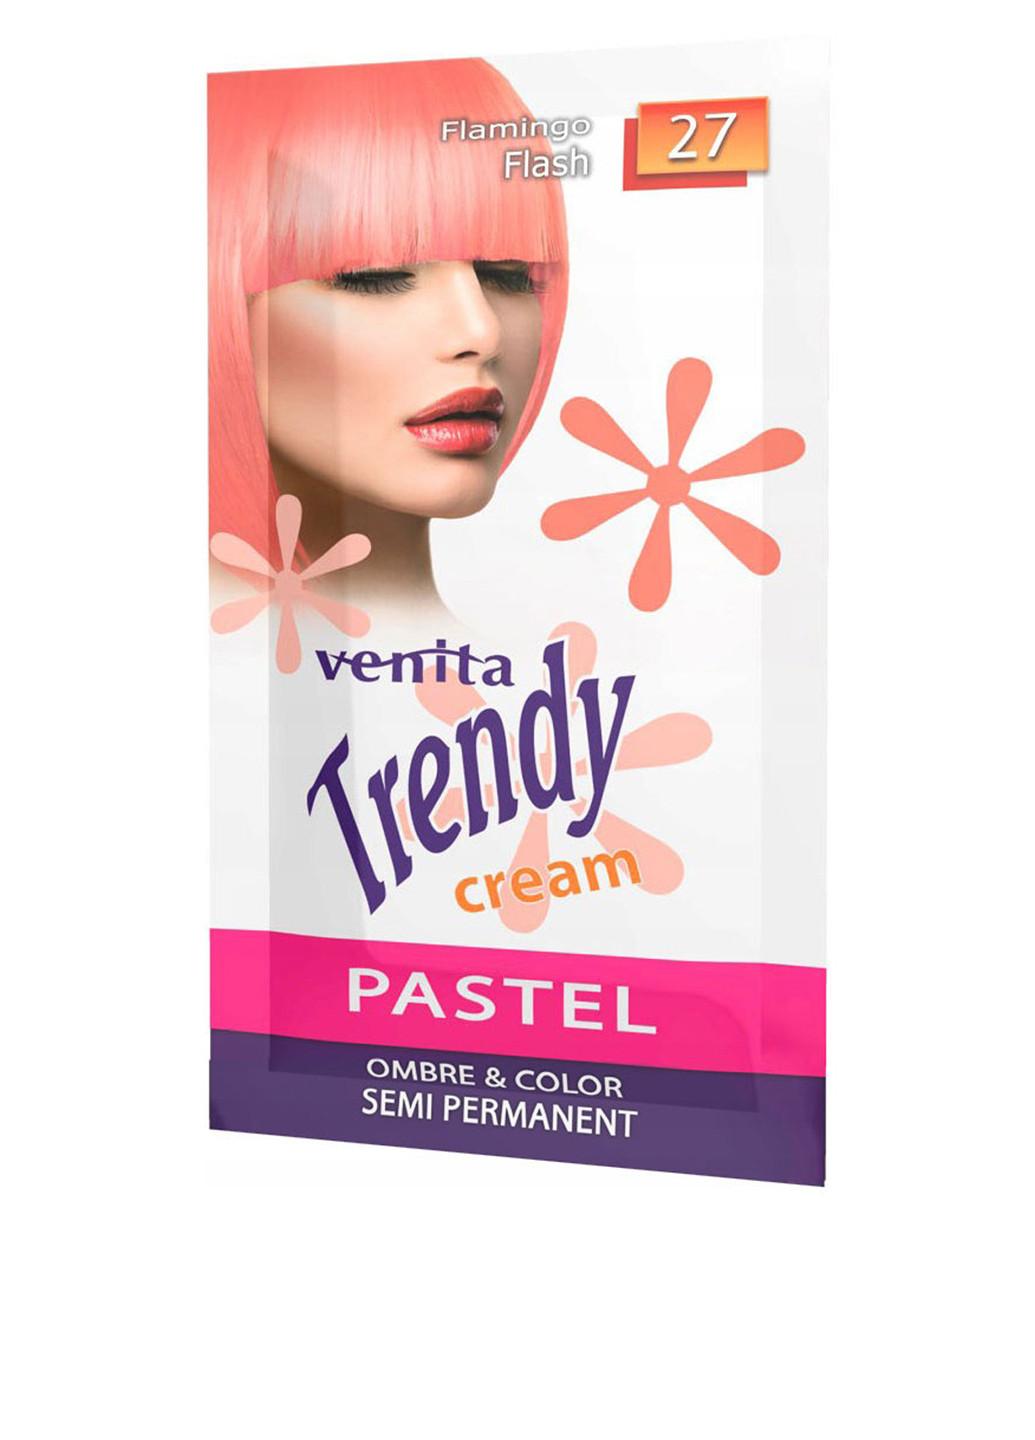 Крем-краска для волос Trendy Cream №27 Flamingo Flash, 35 г Venita (202409133)